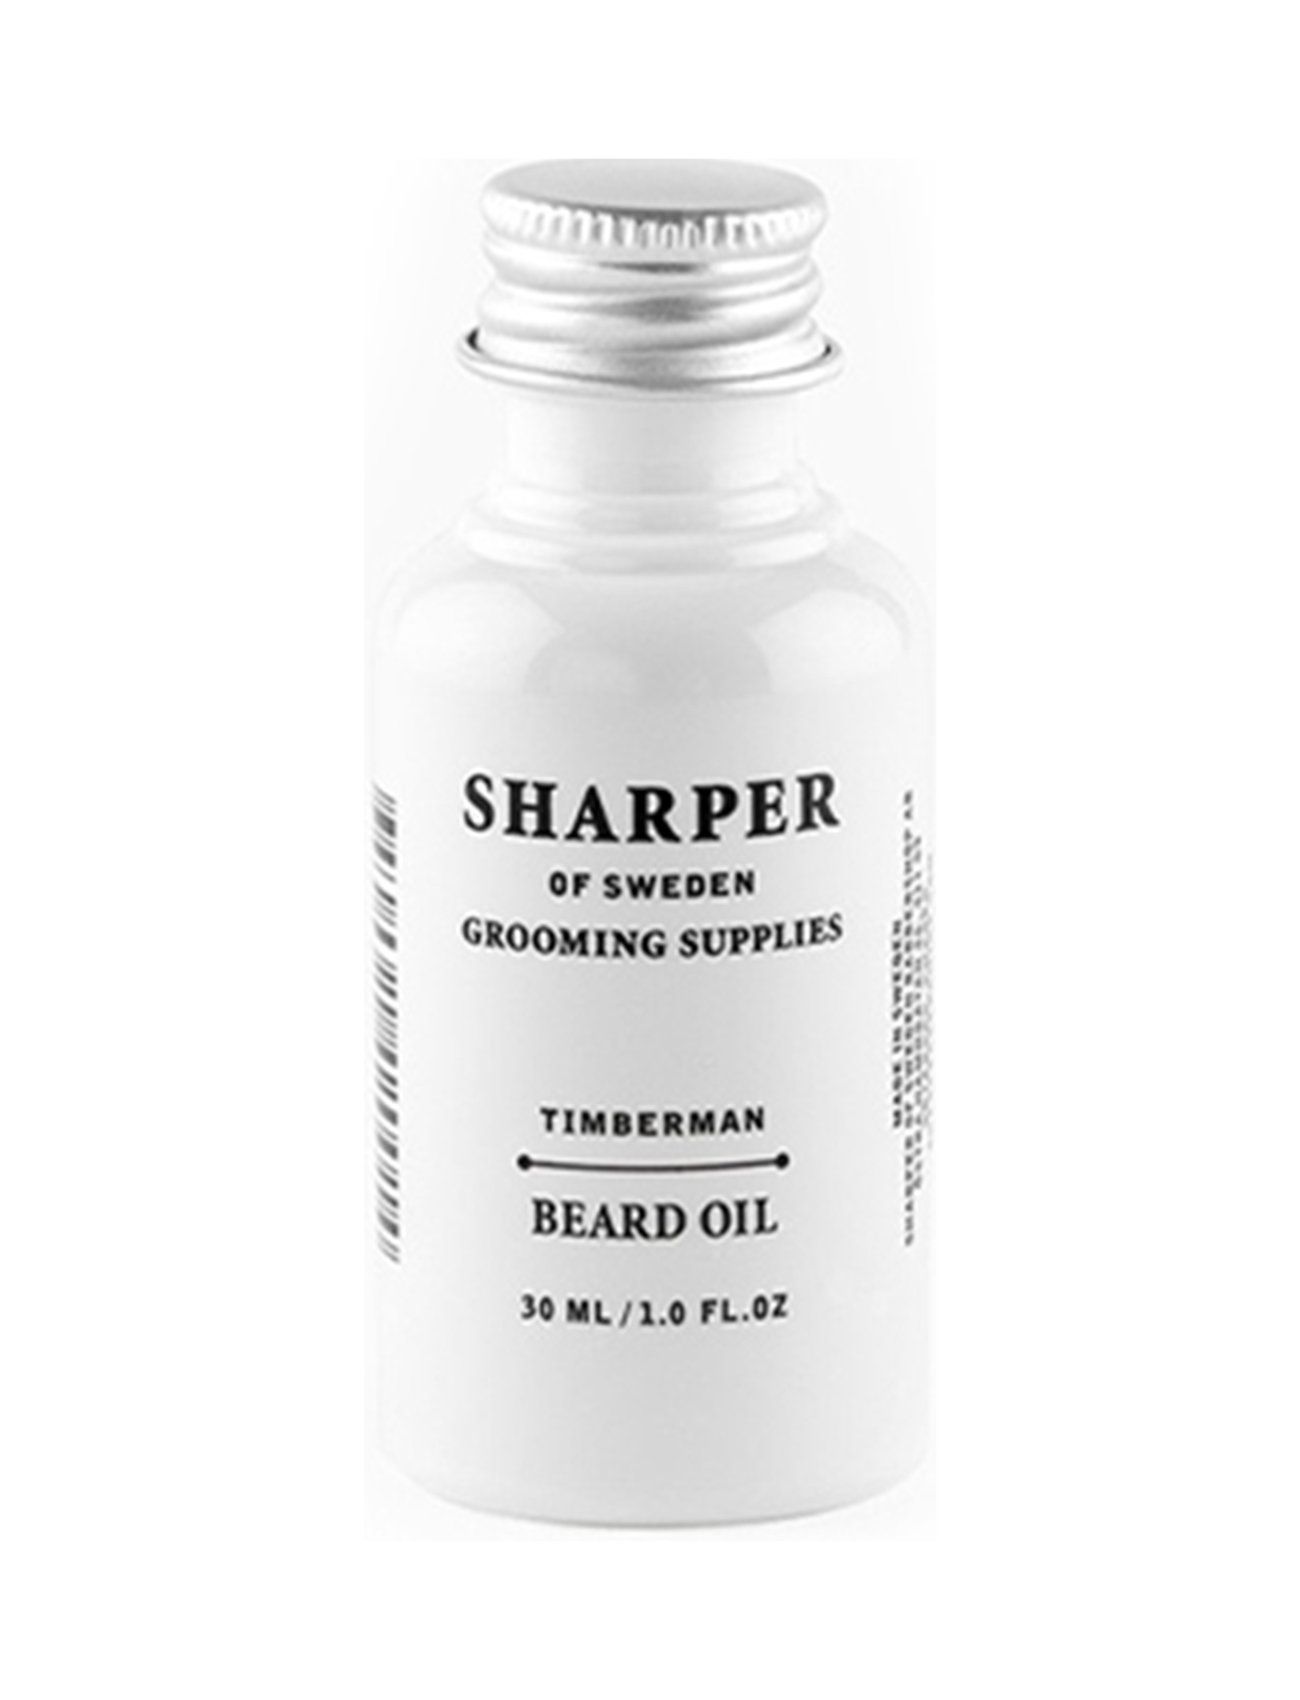 Sharper Beard Oil Timberman Beauty Men Beard & Mustache Beard Oil Nude Sharper Grooming